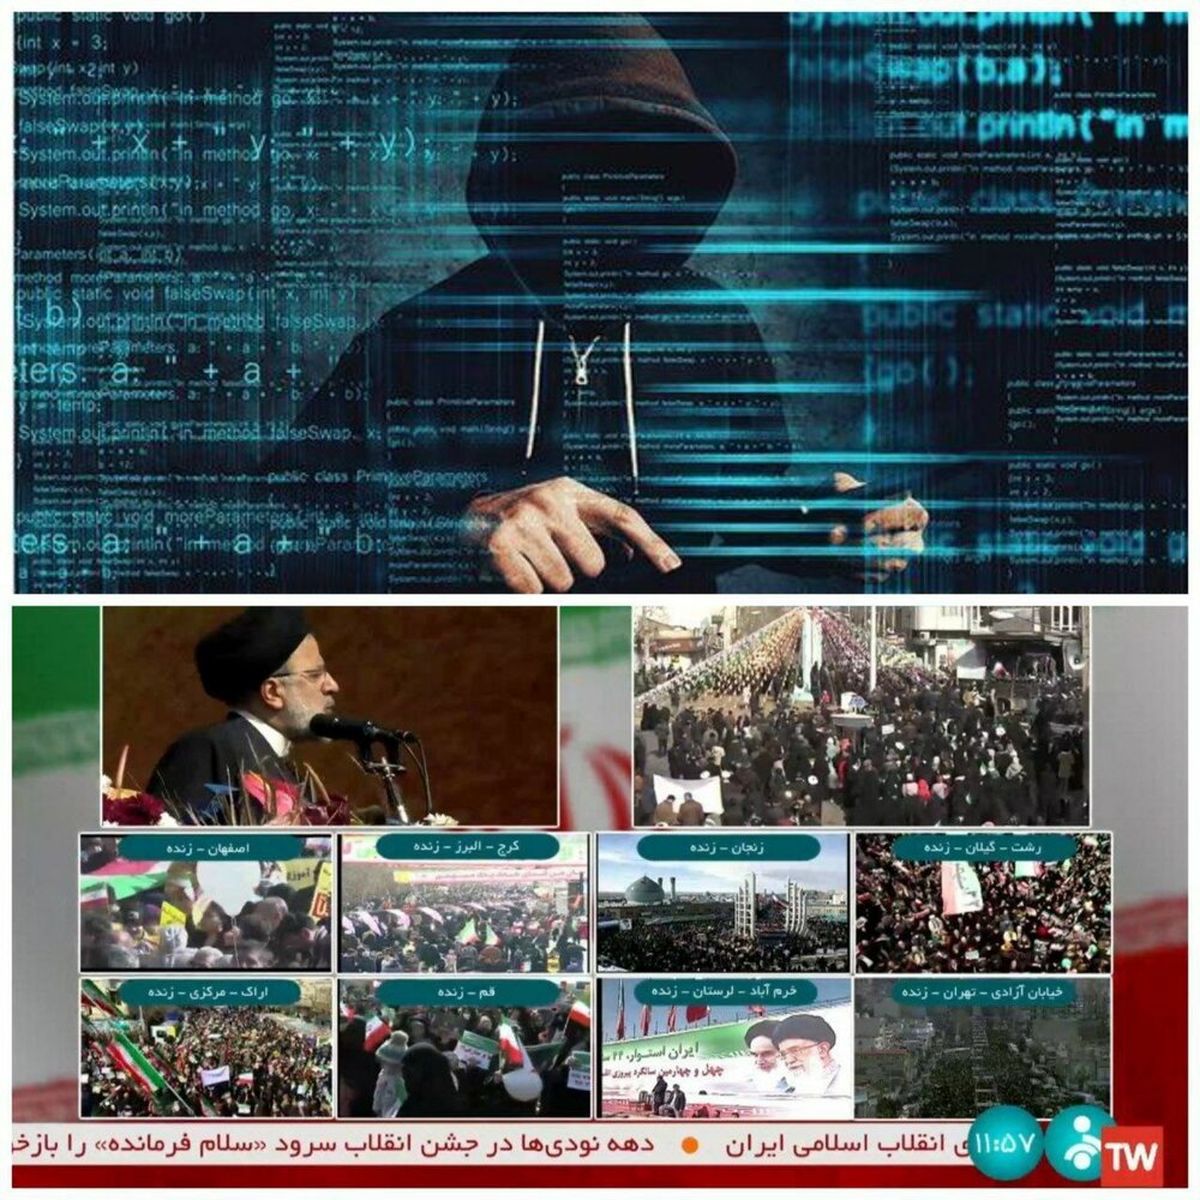 فوری؛ پخش اینترنتی «شبکه خبر» هک شد! + جزئیات